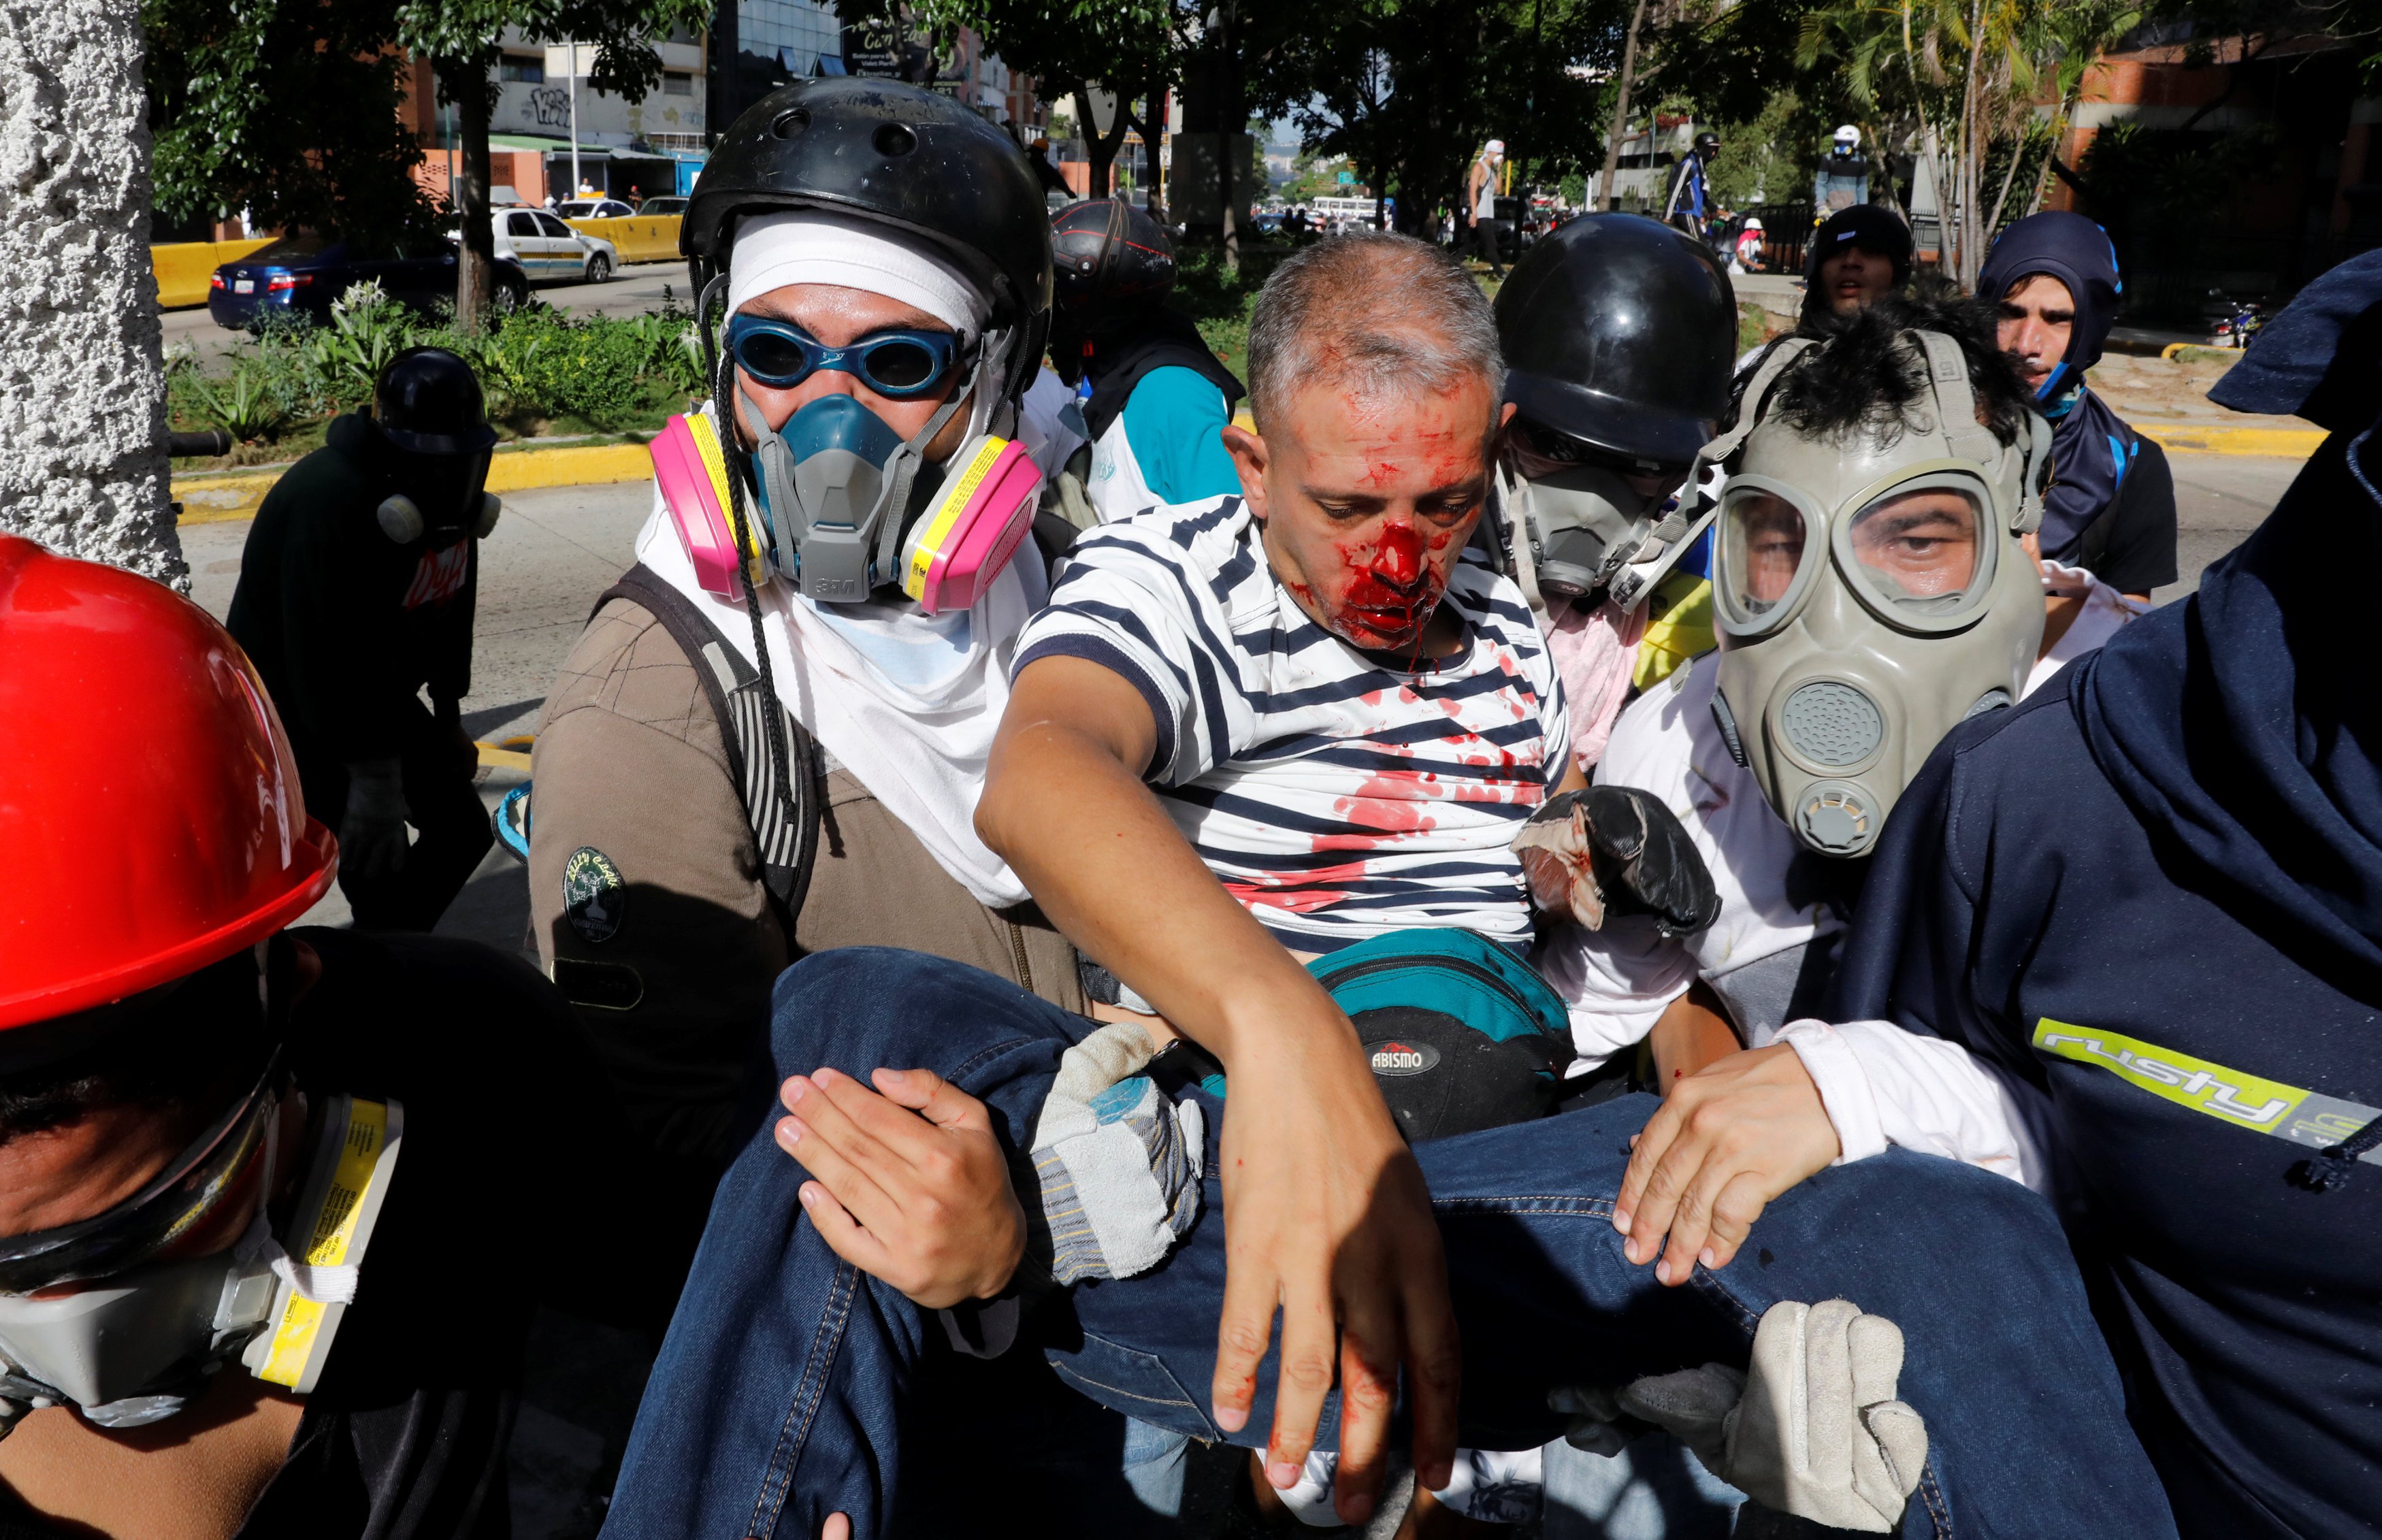 بالصور اشتباكات عنيفة بين الشرطة والمعارضة في فنزويلا